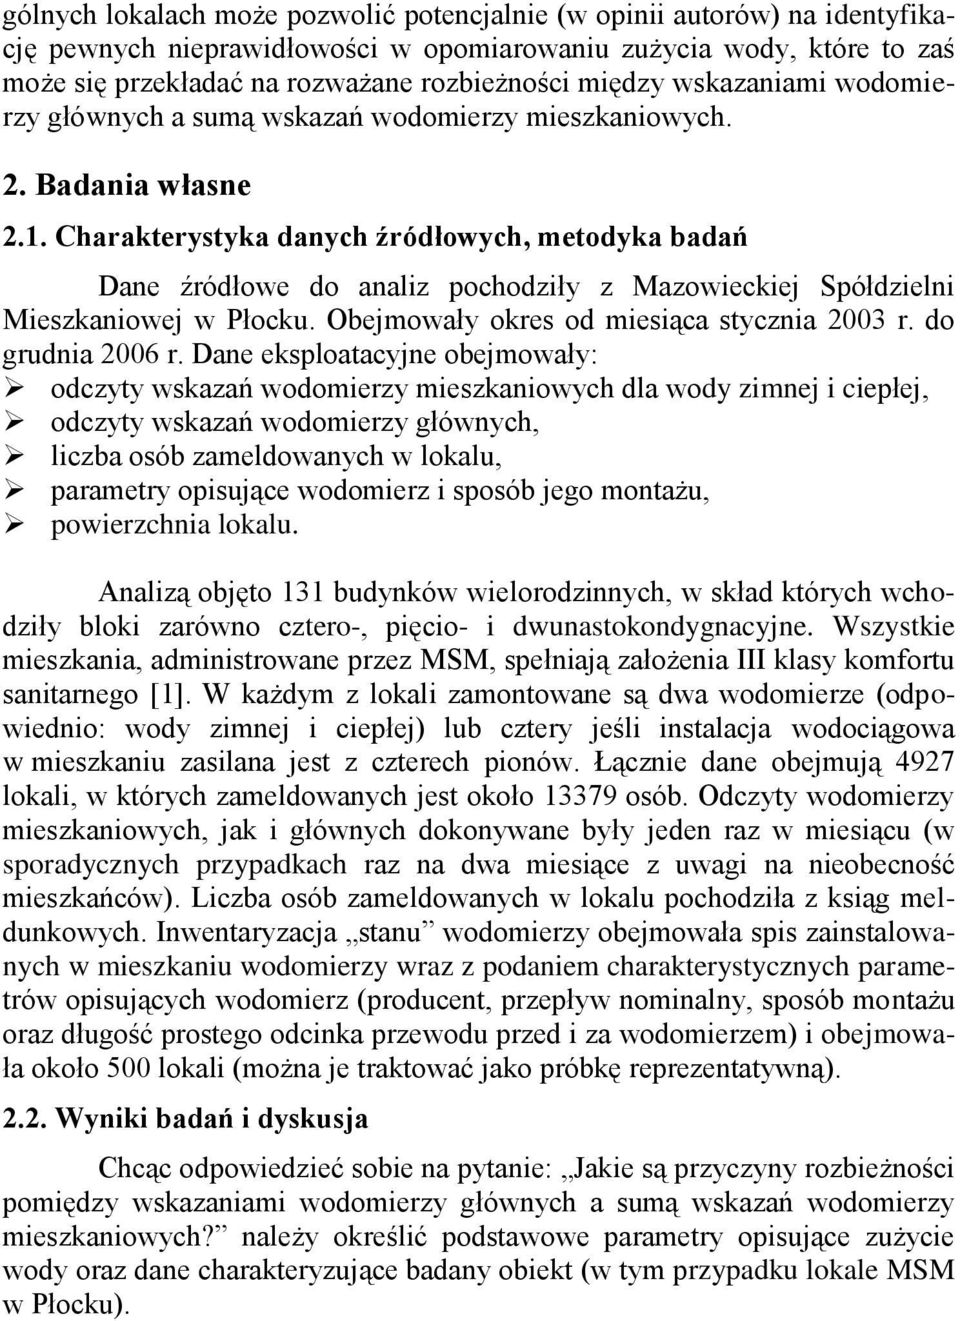 Charakterystyka danych źródłowych, metodyka badań Dane źródłowe do analiz pochodziły z Mazowieckiej Spółdzielni Mieszkaniowej w Płocku. Obejmowały okres od miesiąca stycznia 2003 r. do grudnia 2006 r.